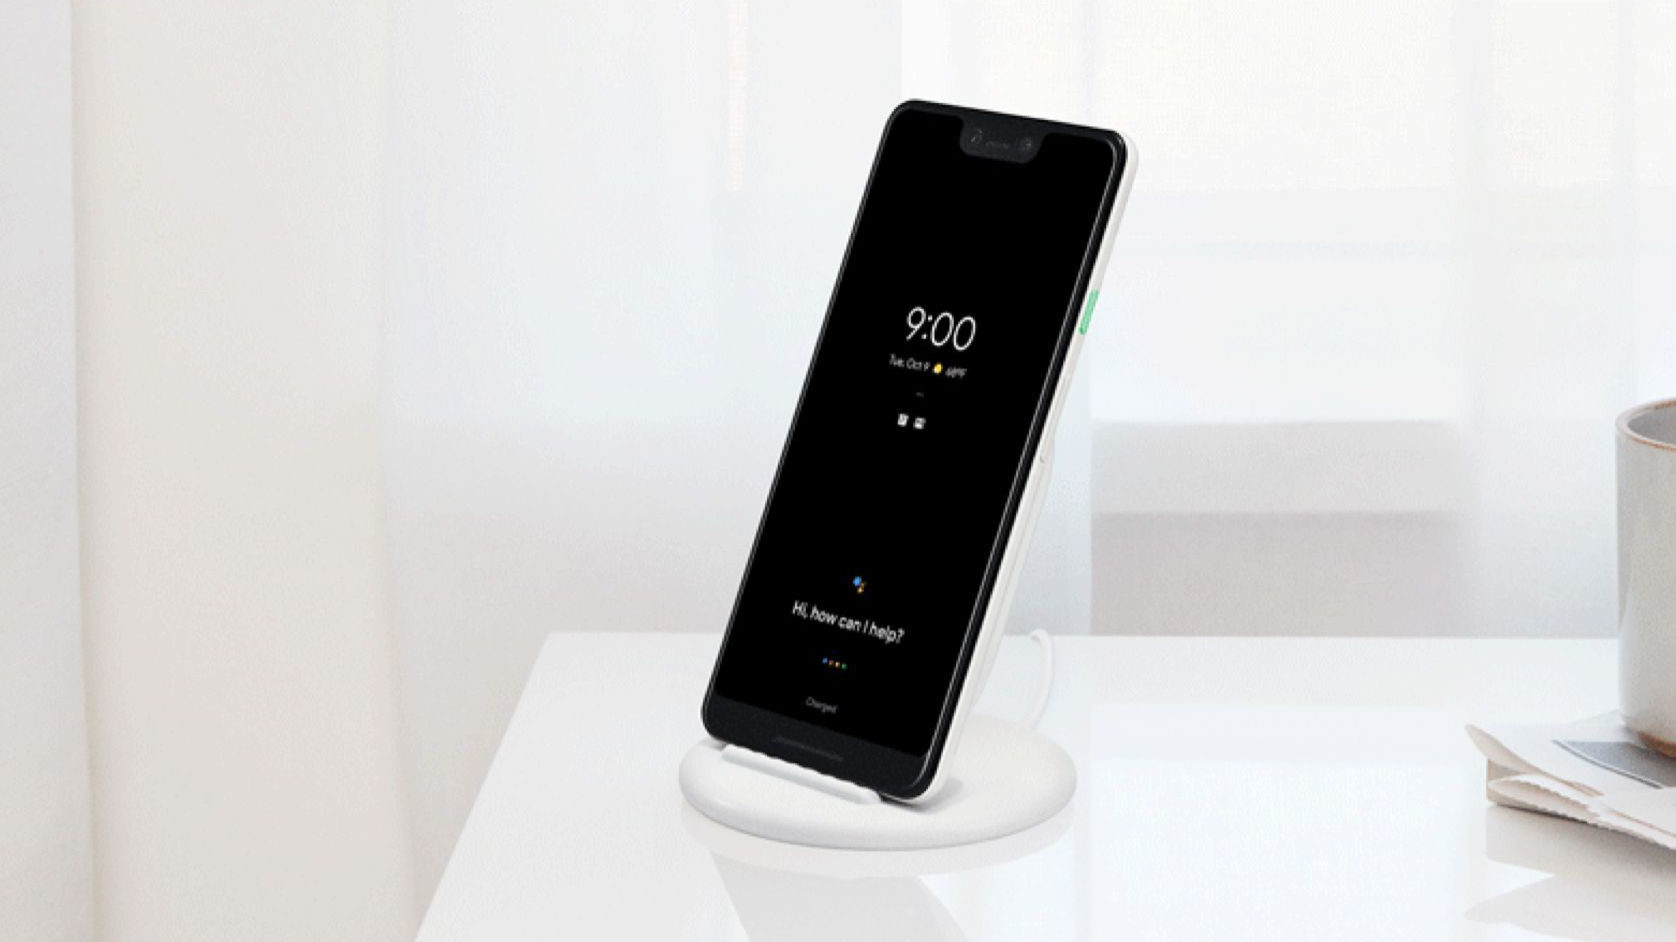 Chargeurs sans-fil Qi : les meilleurs pour smartphones iPhone et Samsung